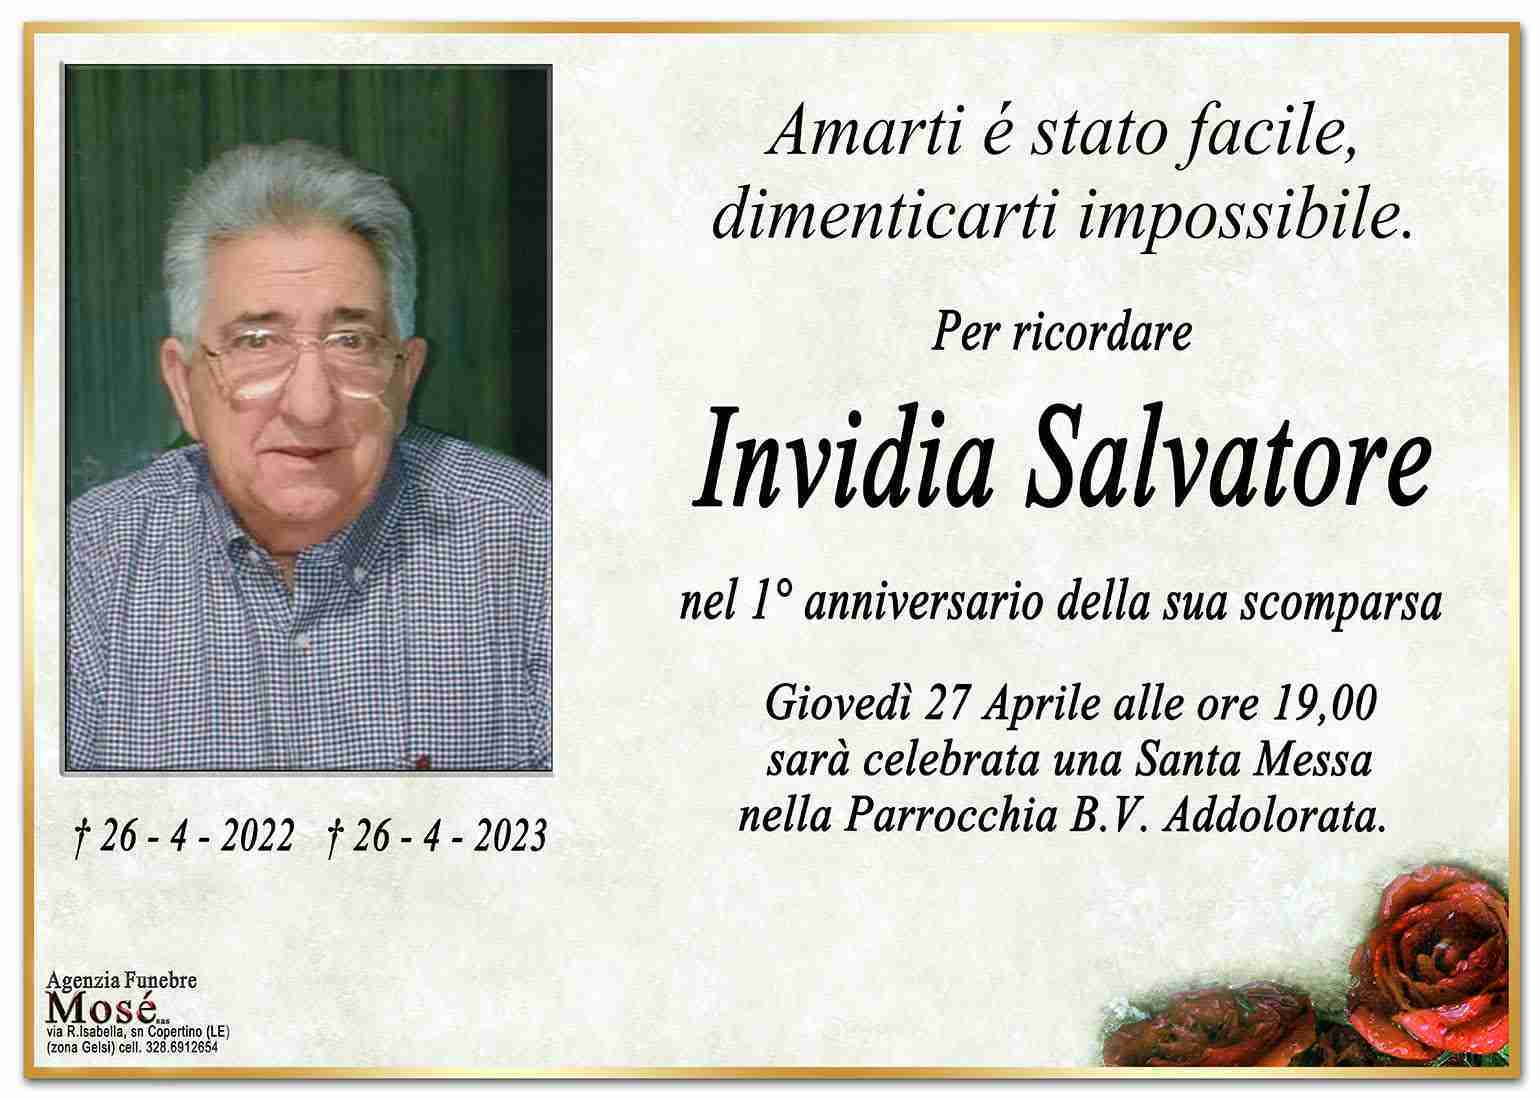 Salvatore Invidia